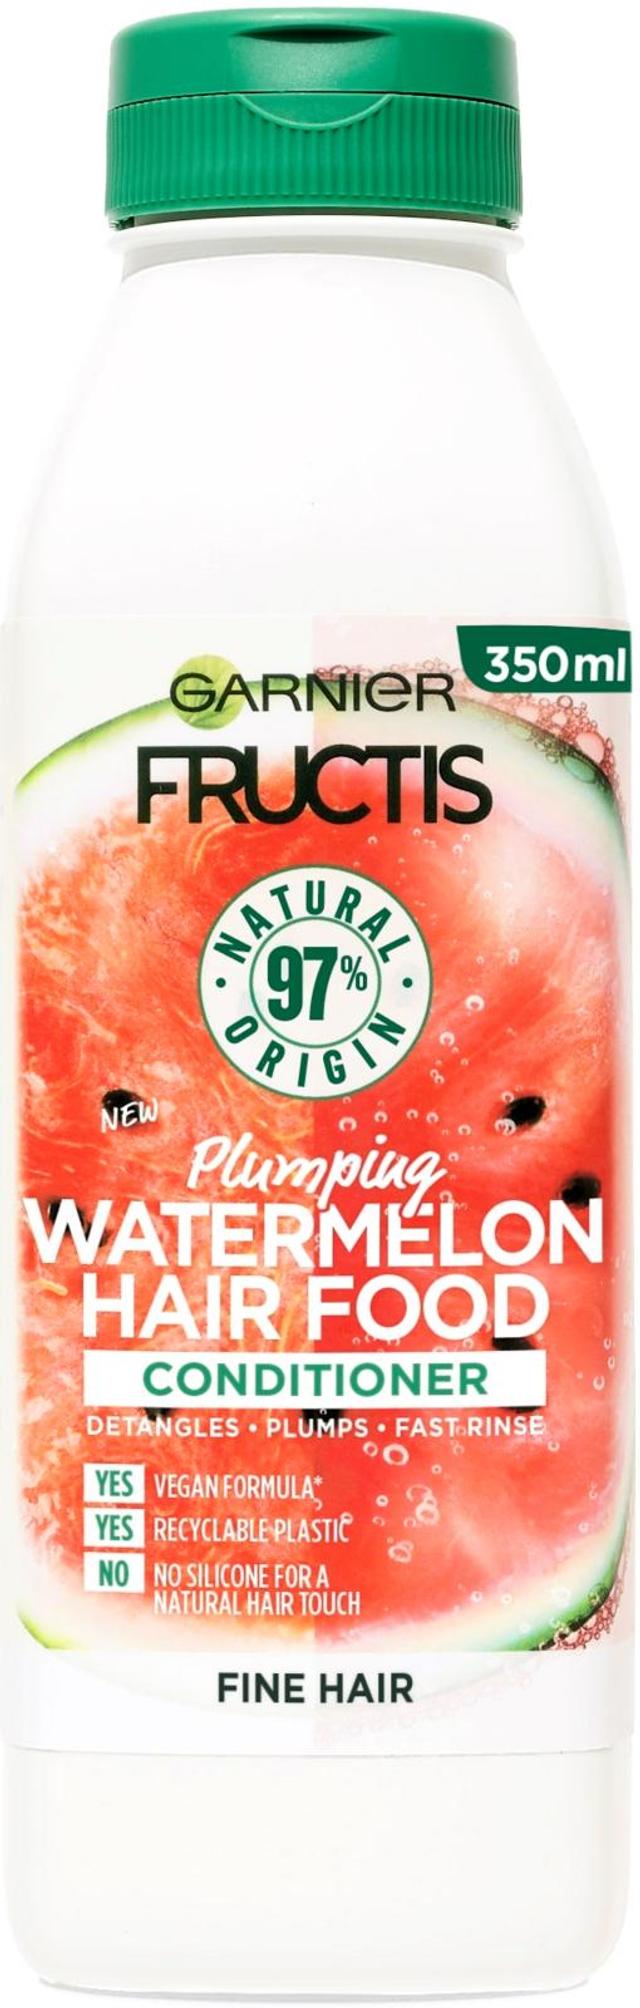 Garnier Fructis Hair Food Watermelon hoitoaine hennoille hiuksille 350ml